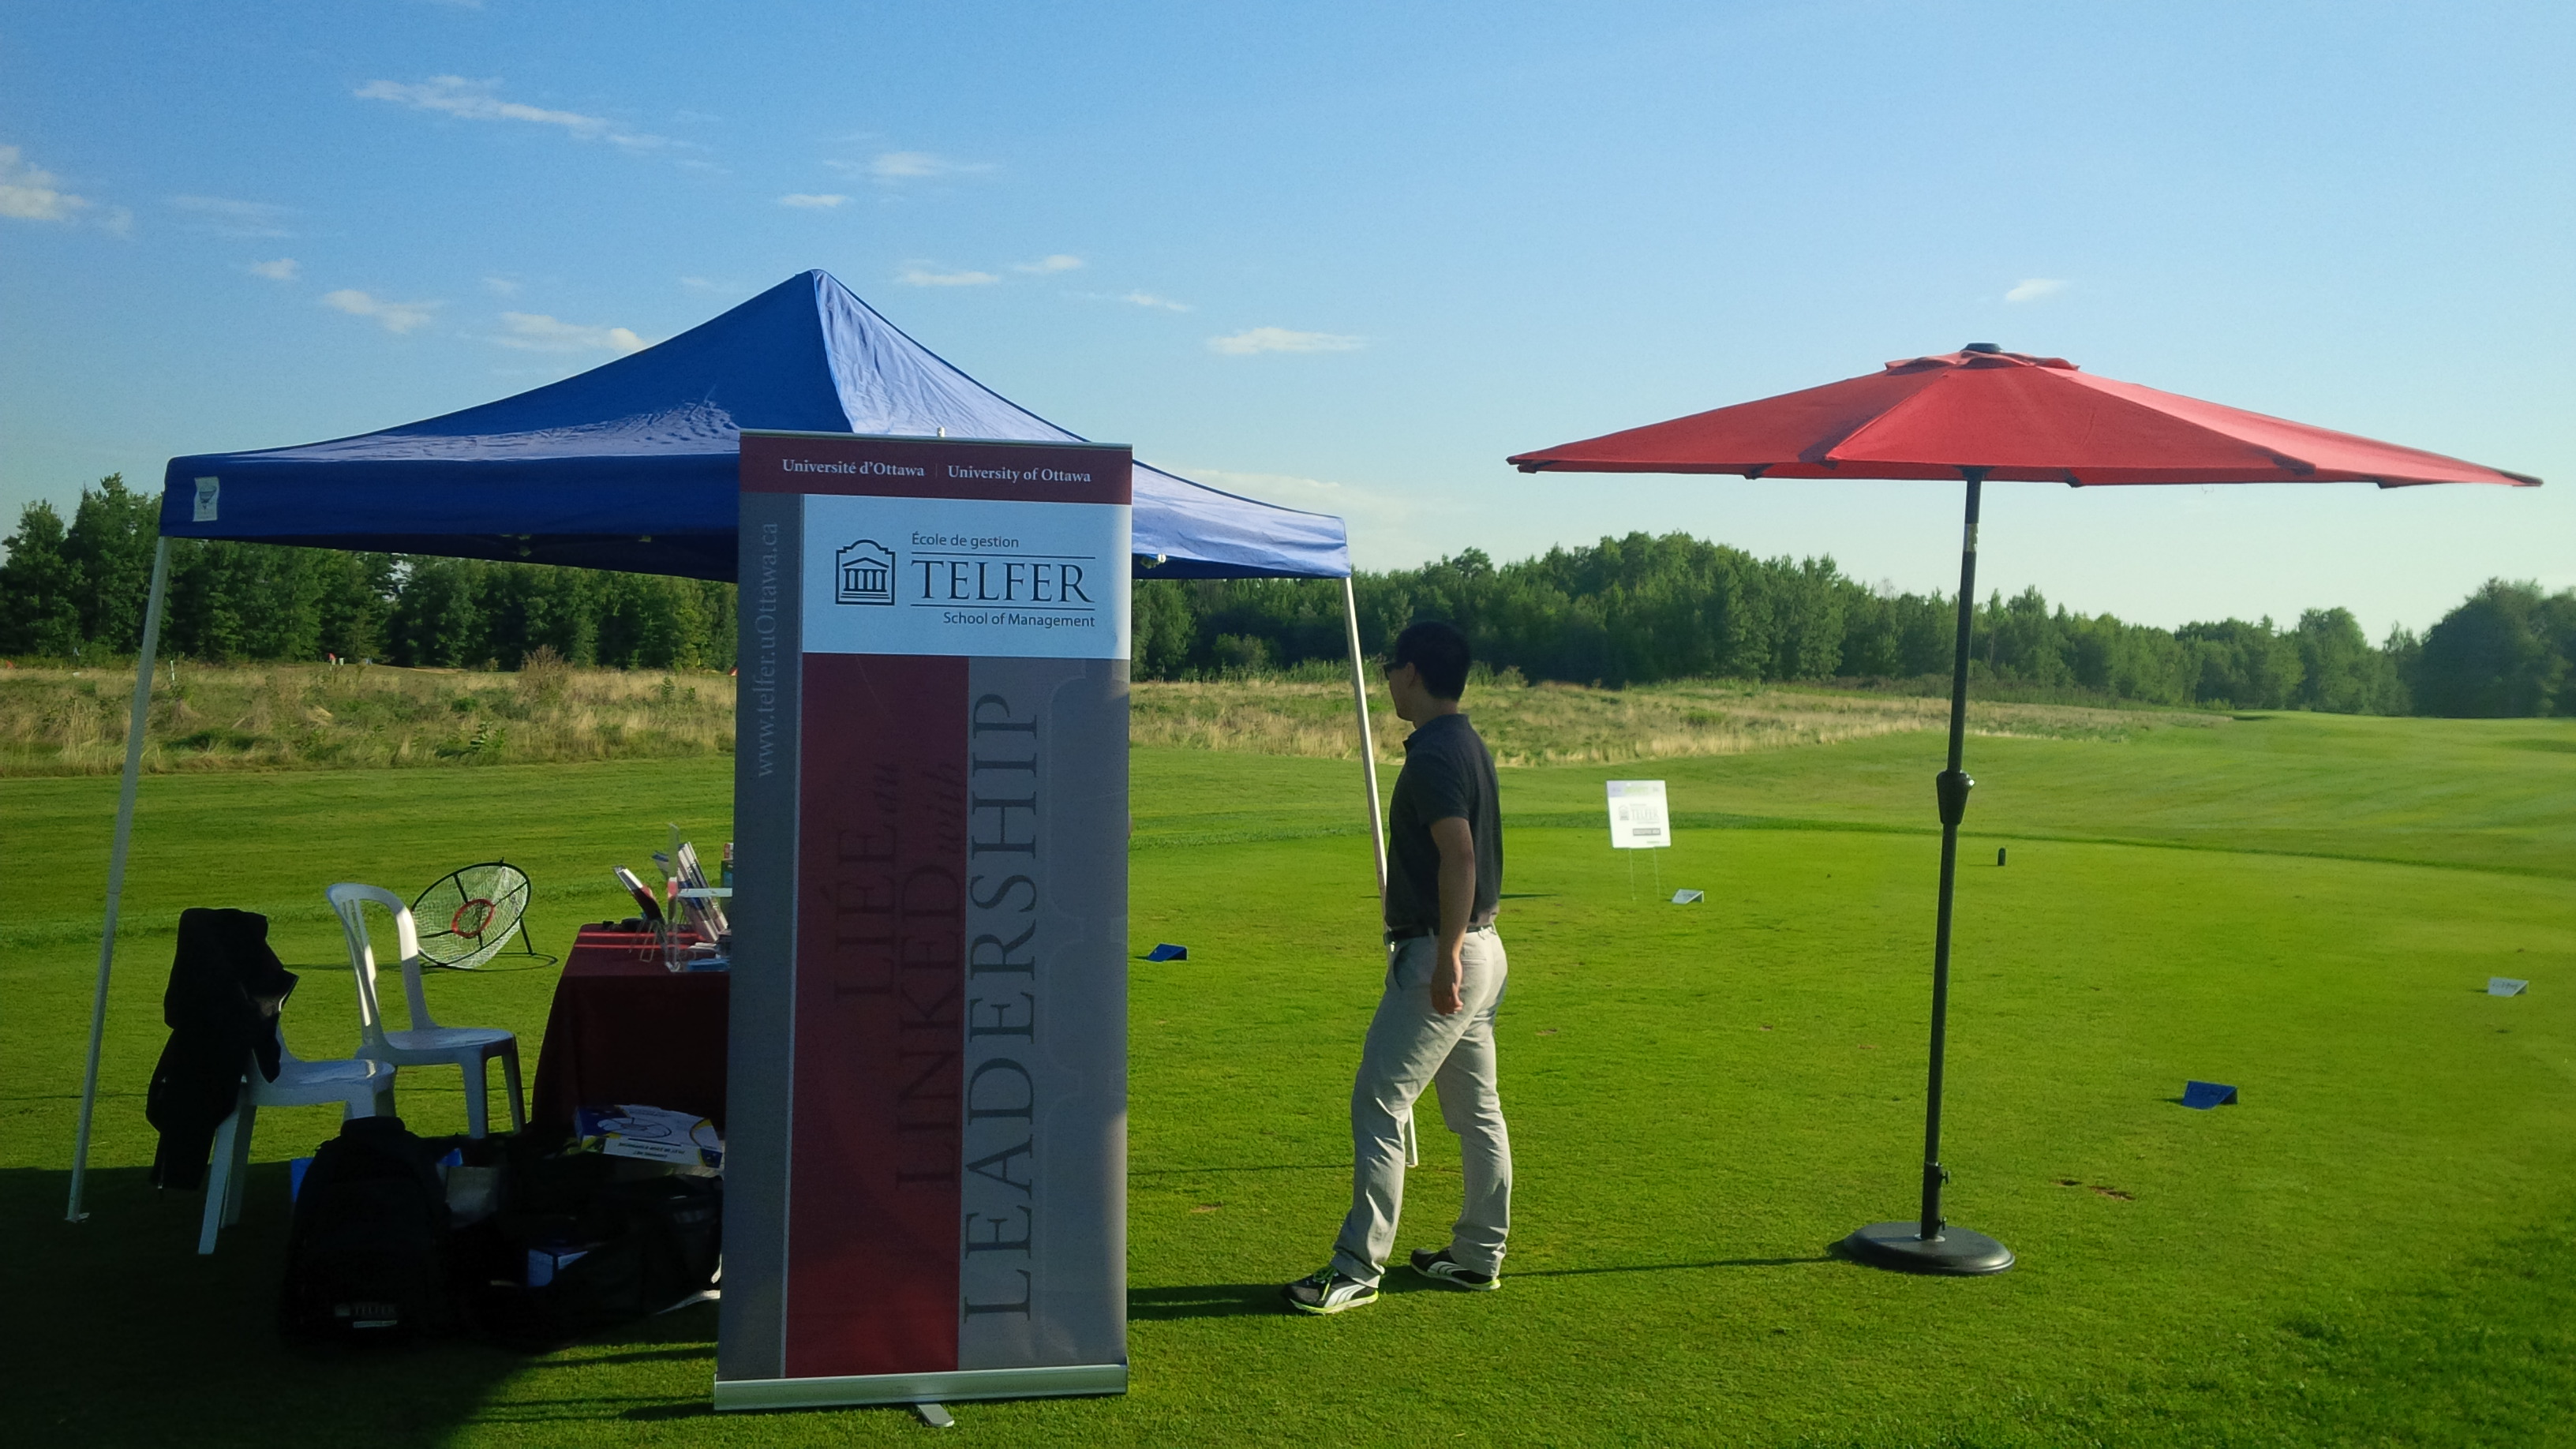 Ottawa's Biggest Golf Tournament - August 26, 2014